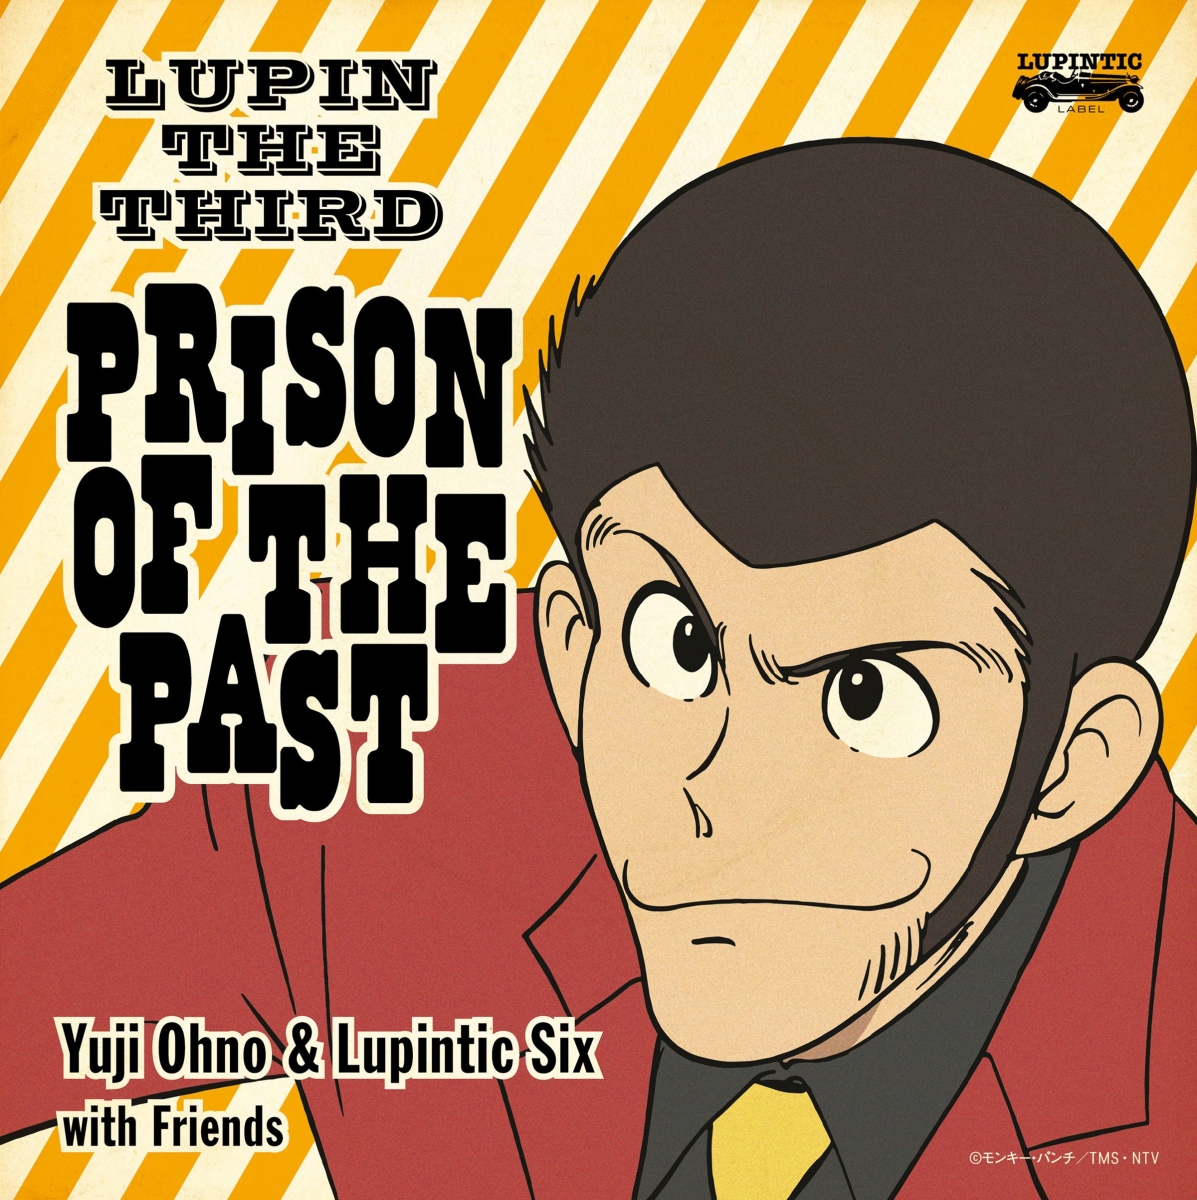 楽天ブックス Lupin The Third Prison Of The Past Blu Spec 2cd Yuji Ohno Lupintic Six Cd